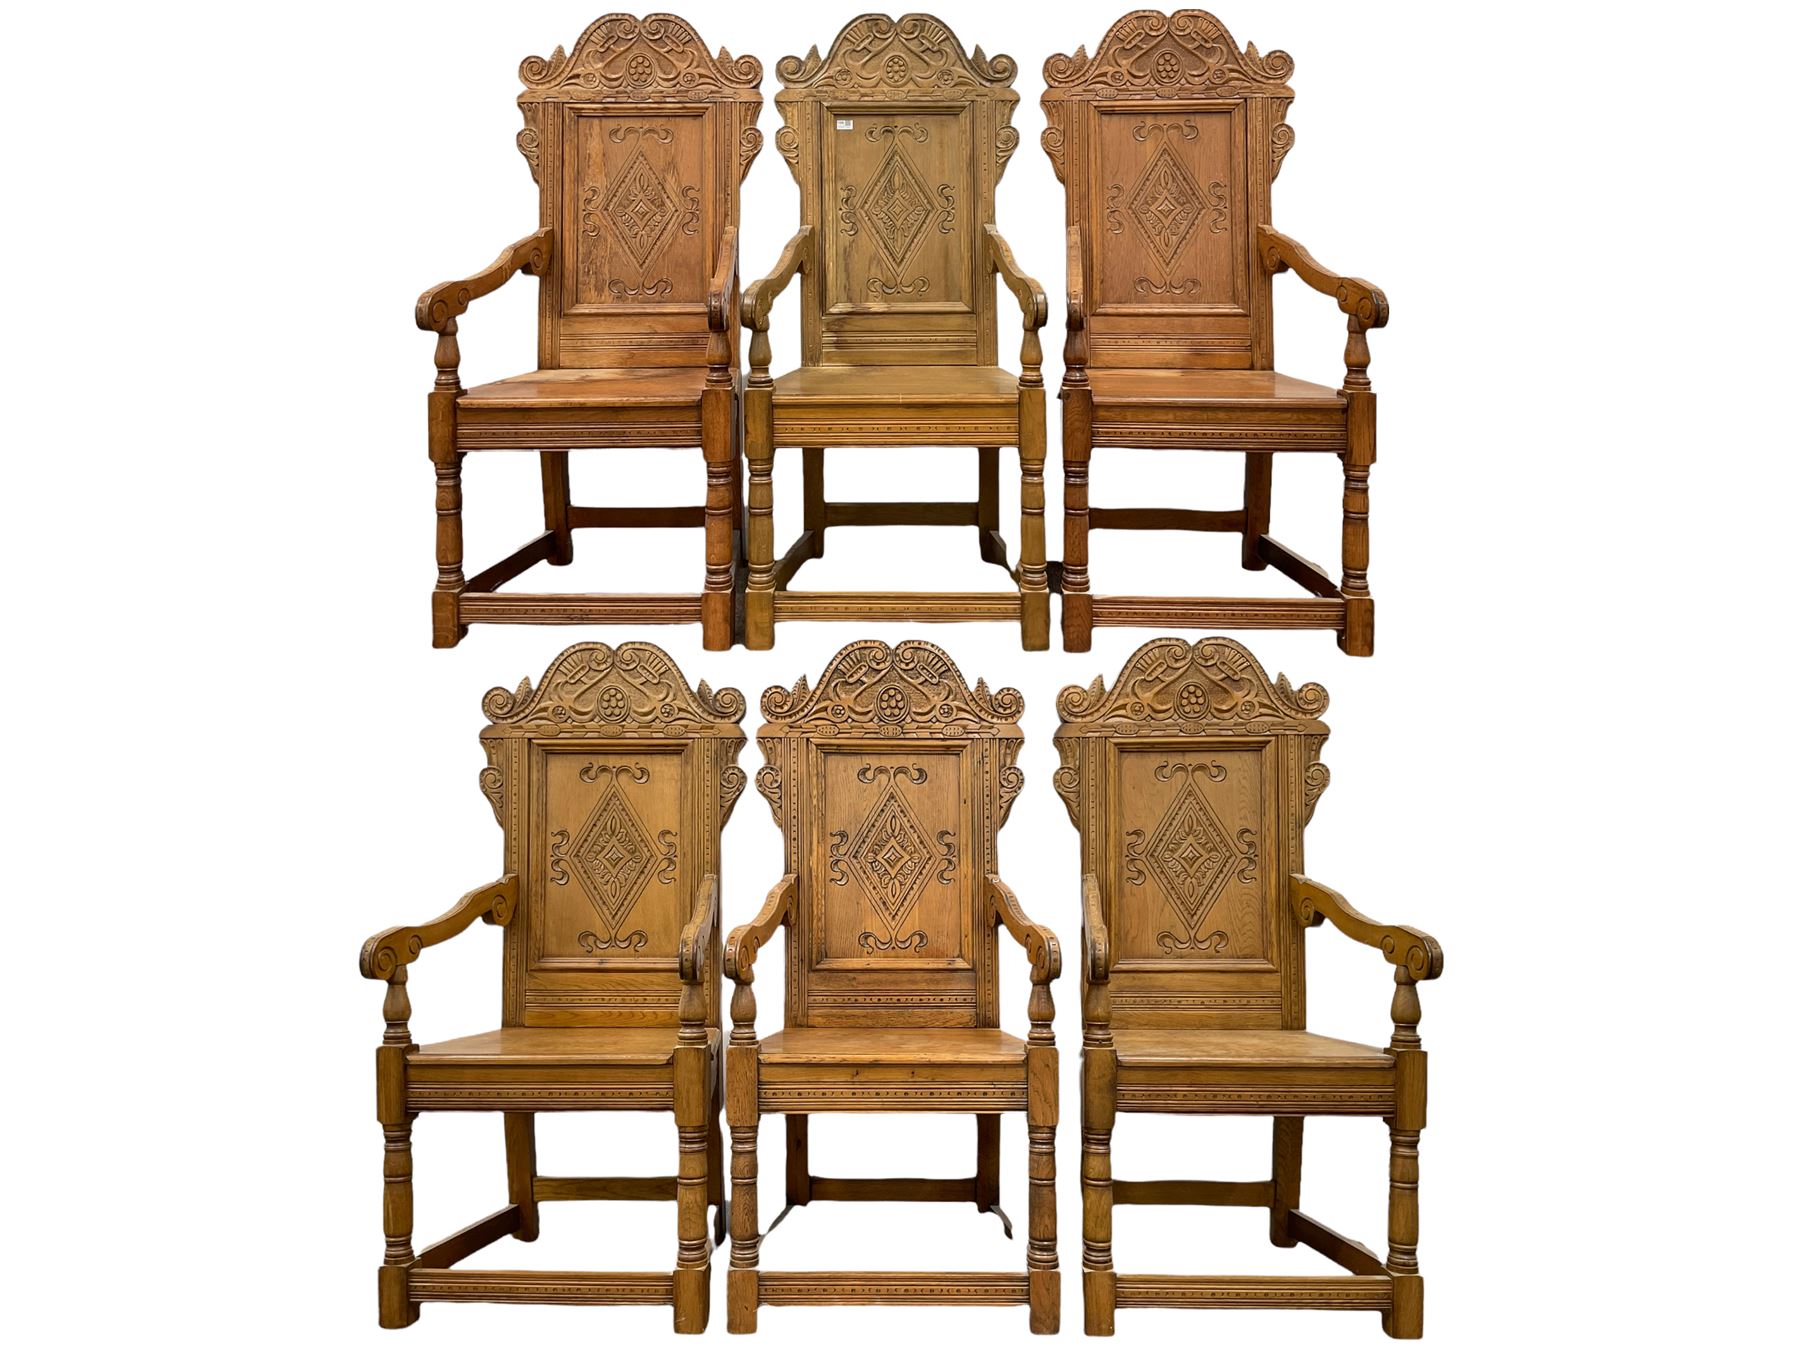 Set six 17th century style oak Wainscot chairs